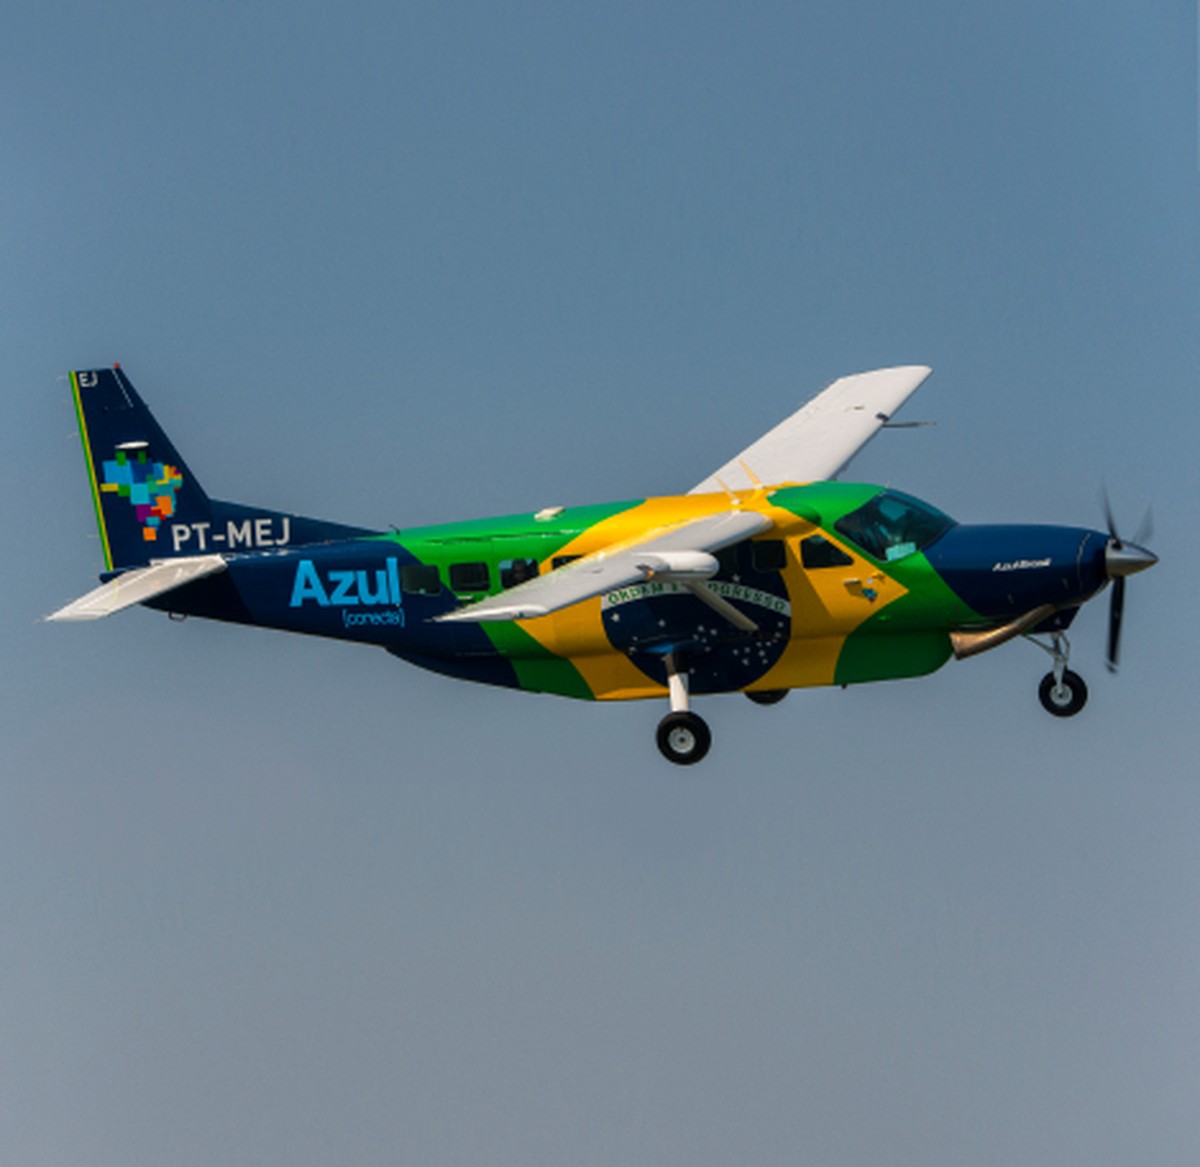 Subsidiária da Azul anuncia encomenda de até 10 aviões turboélice